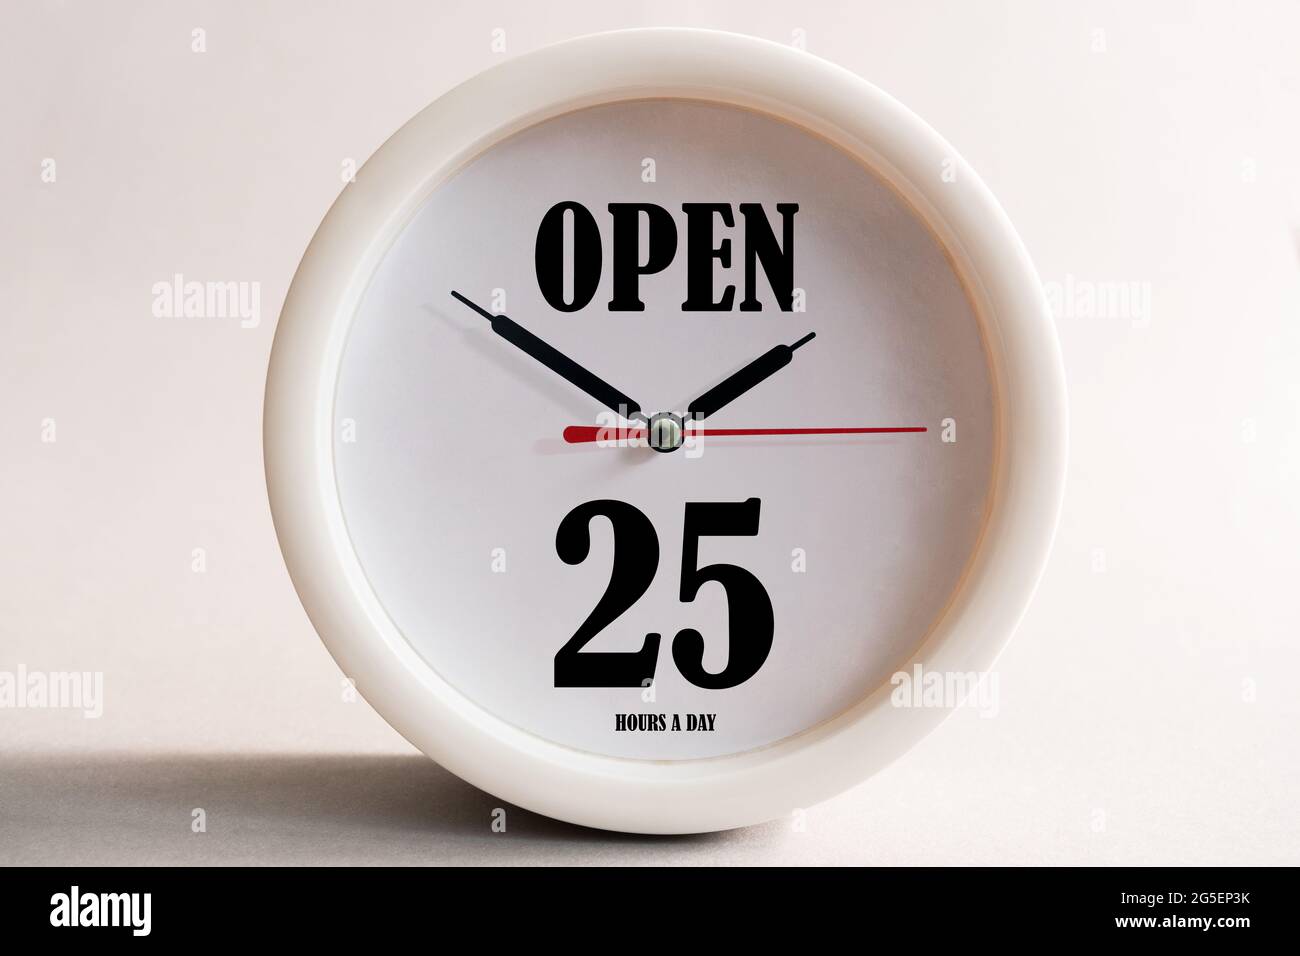 Ladenschild-Design, 25 Stunden am Tag geöffnet Stockfotografie - Alamy